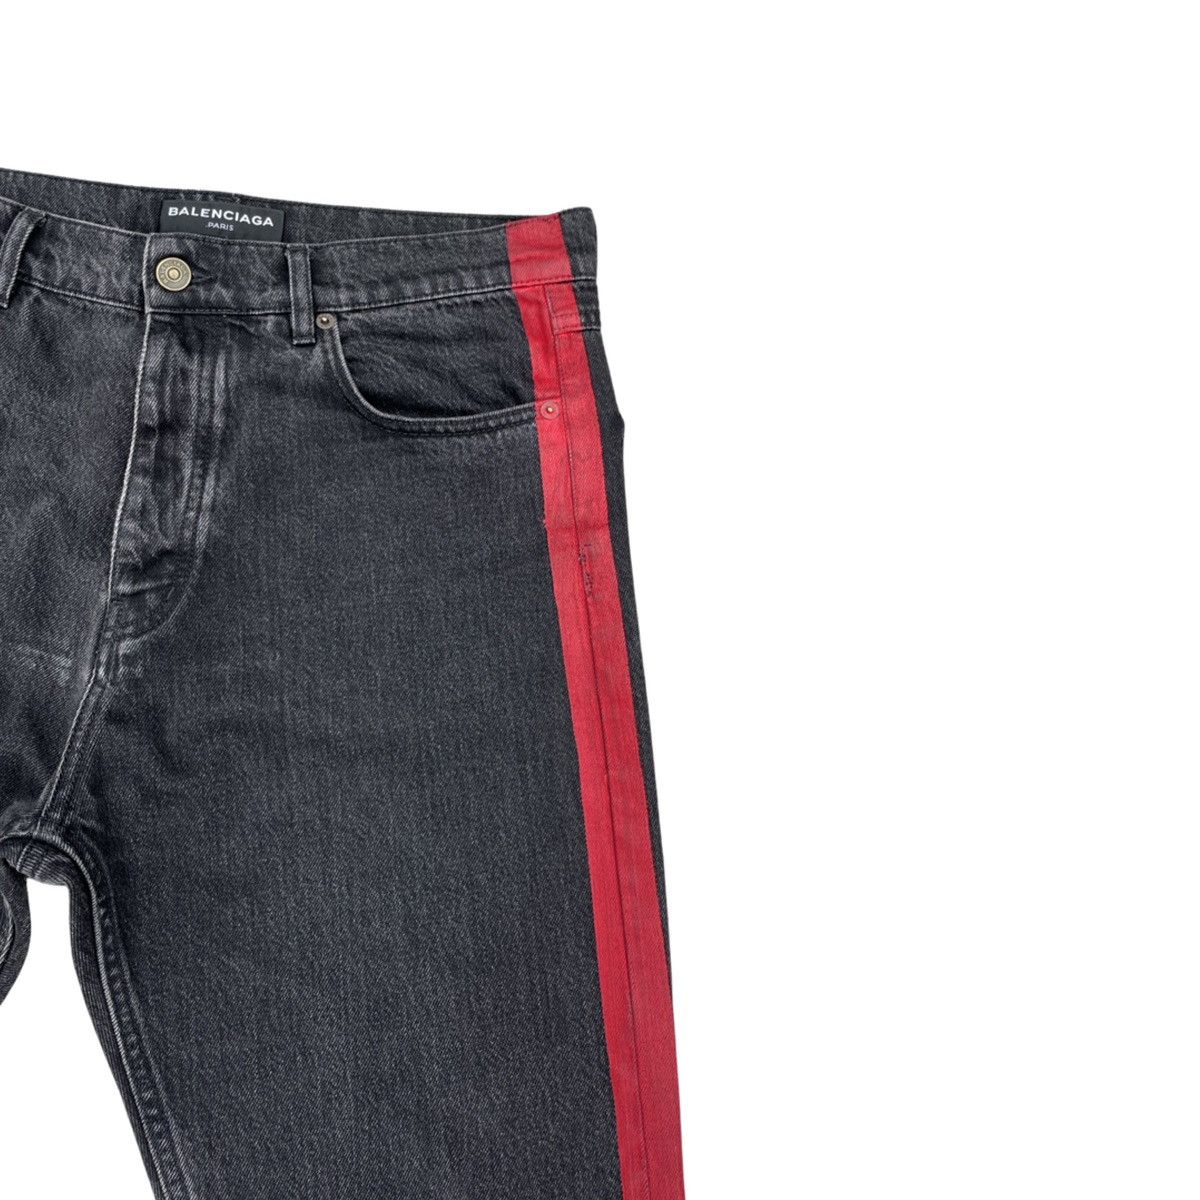 Balenciaga SS17 Red Stripe Jeans Size US 32 / EU 48 - 9 Thumbnail